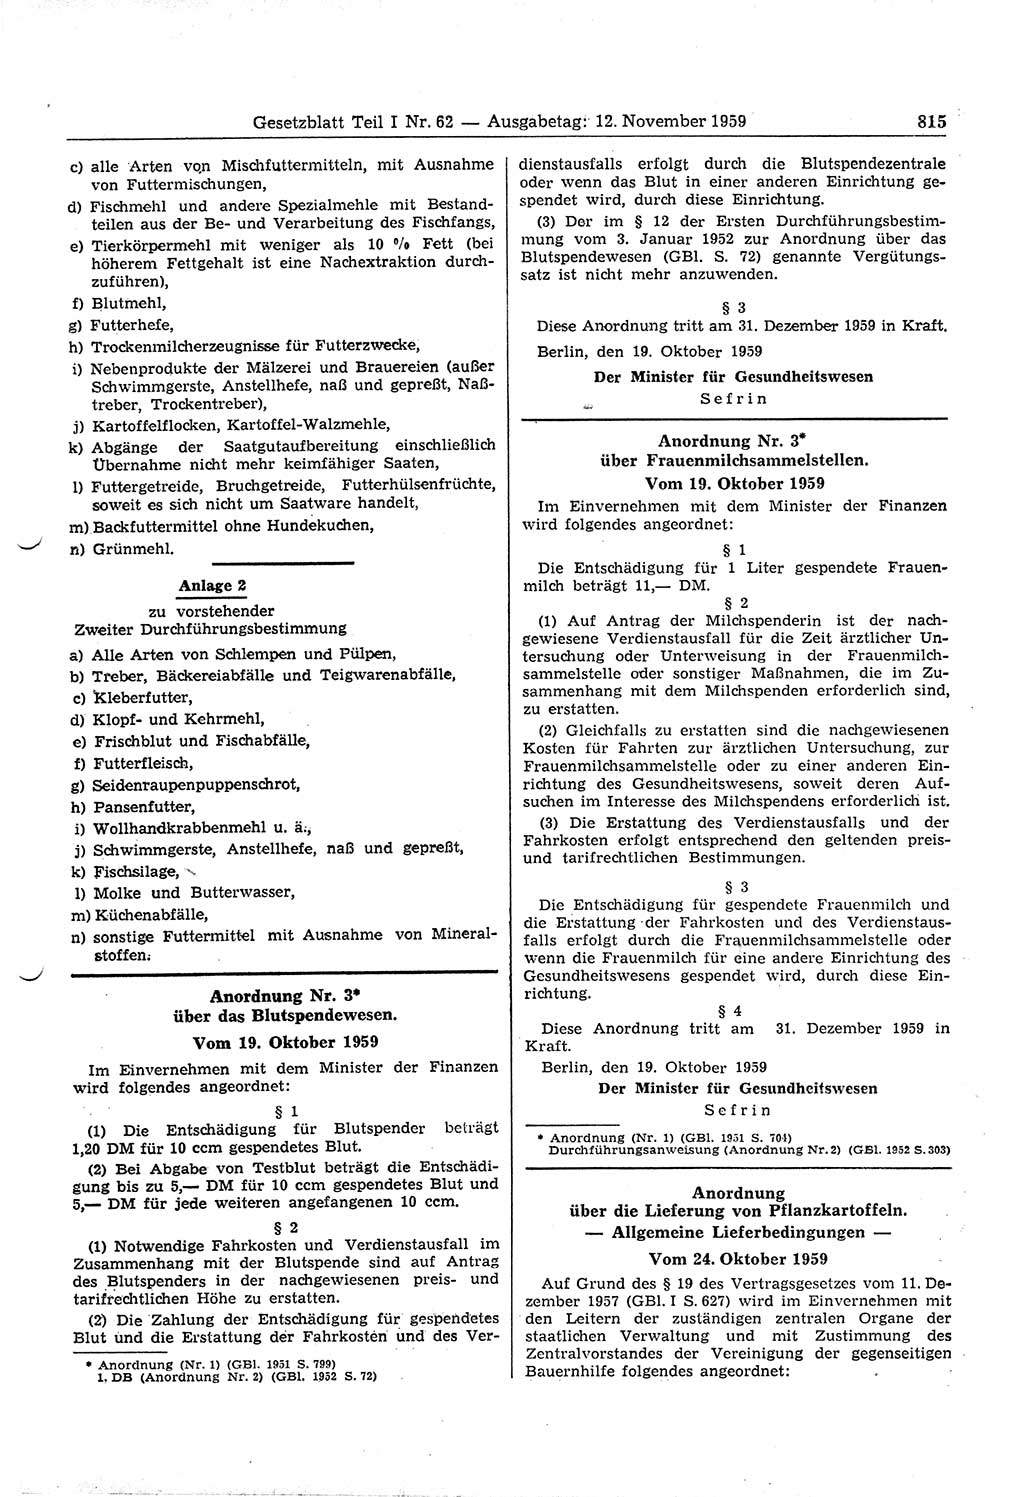 Gesetzblatt (GBl.) der Deutschen Demokratischen Republik (DDR) Teil Ⅰ 1959, Seite 815 (GBl. DDR Ⅰ 1959, S. 815)